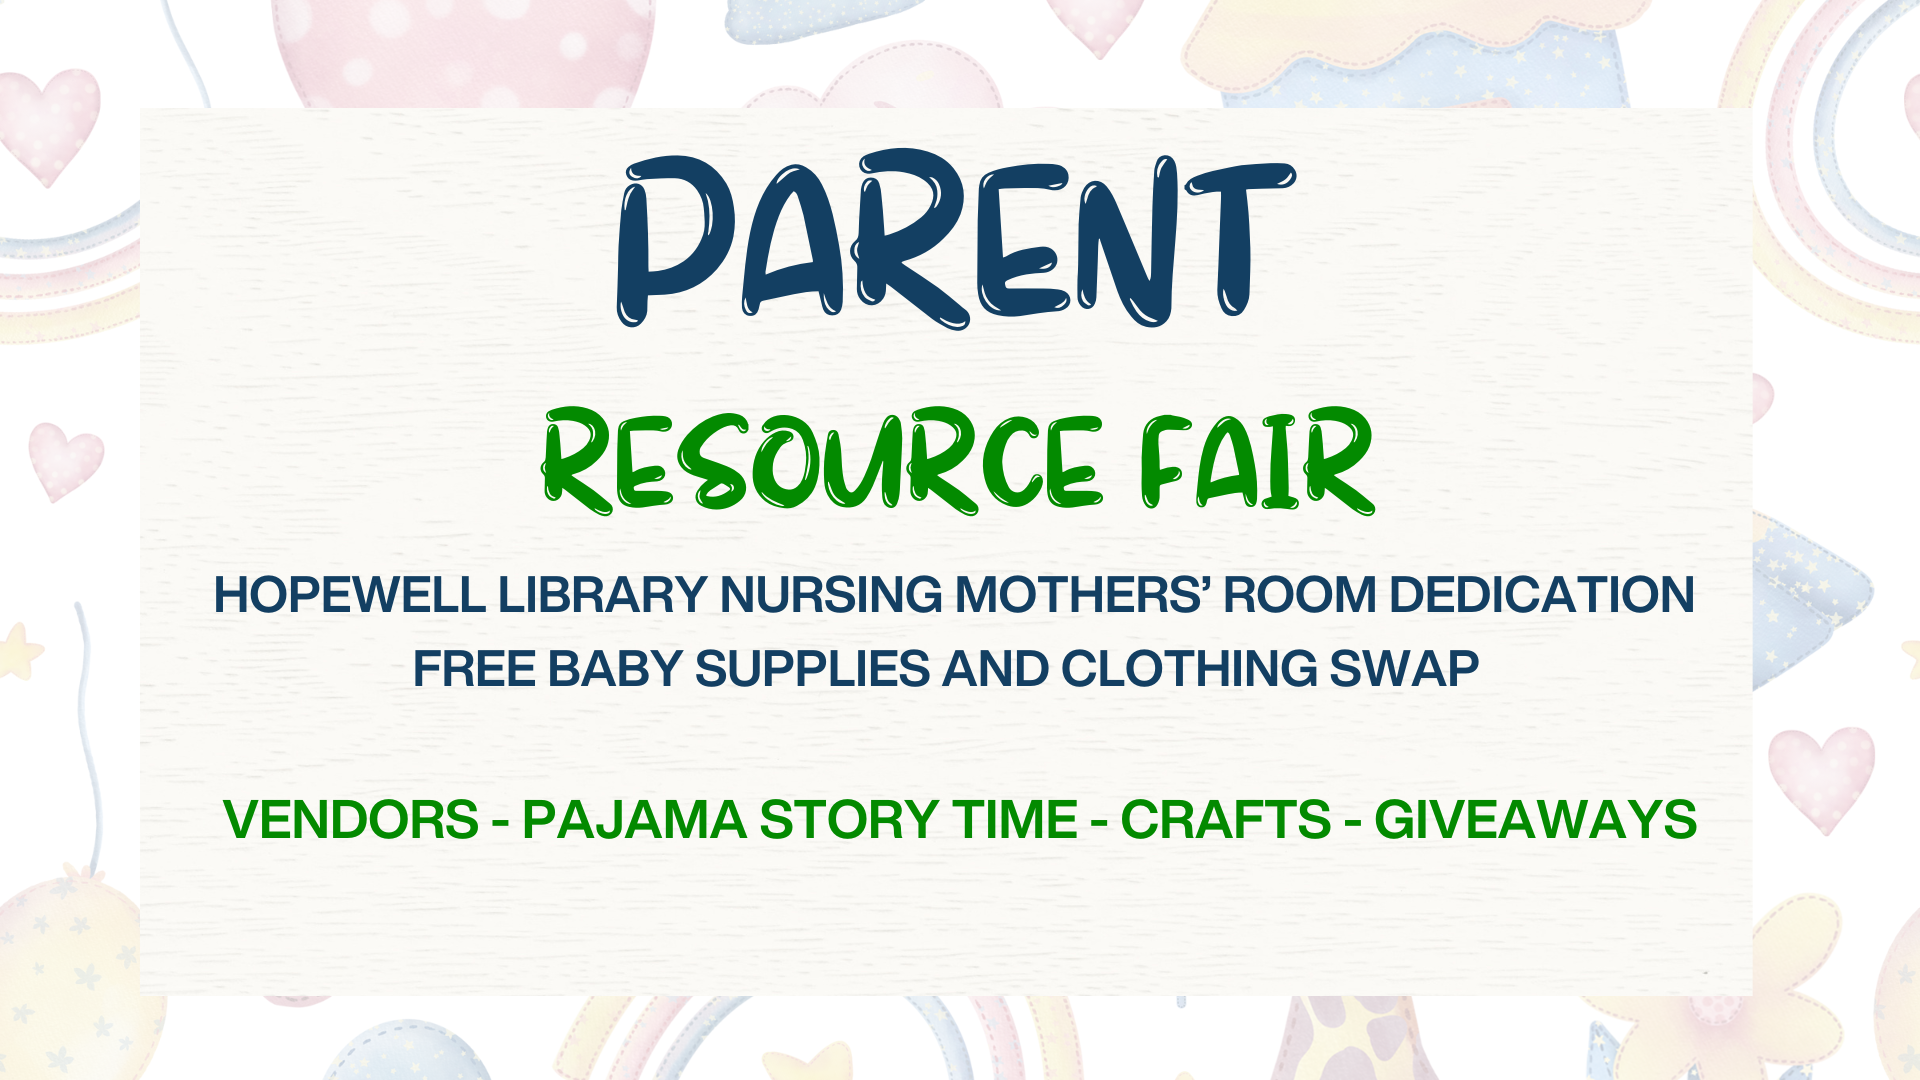 Parent Resource Fair April 3 at 6 pm Vendors - Pajama Story Time - Crafts - Giveaways